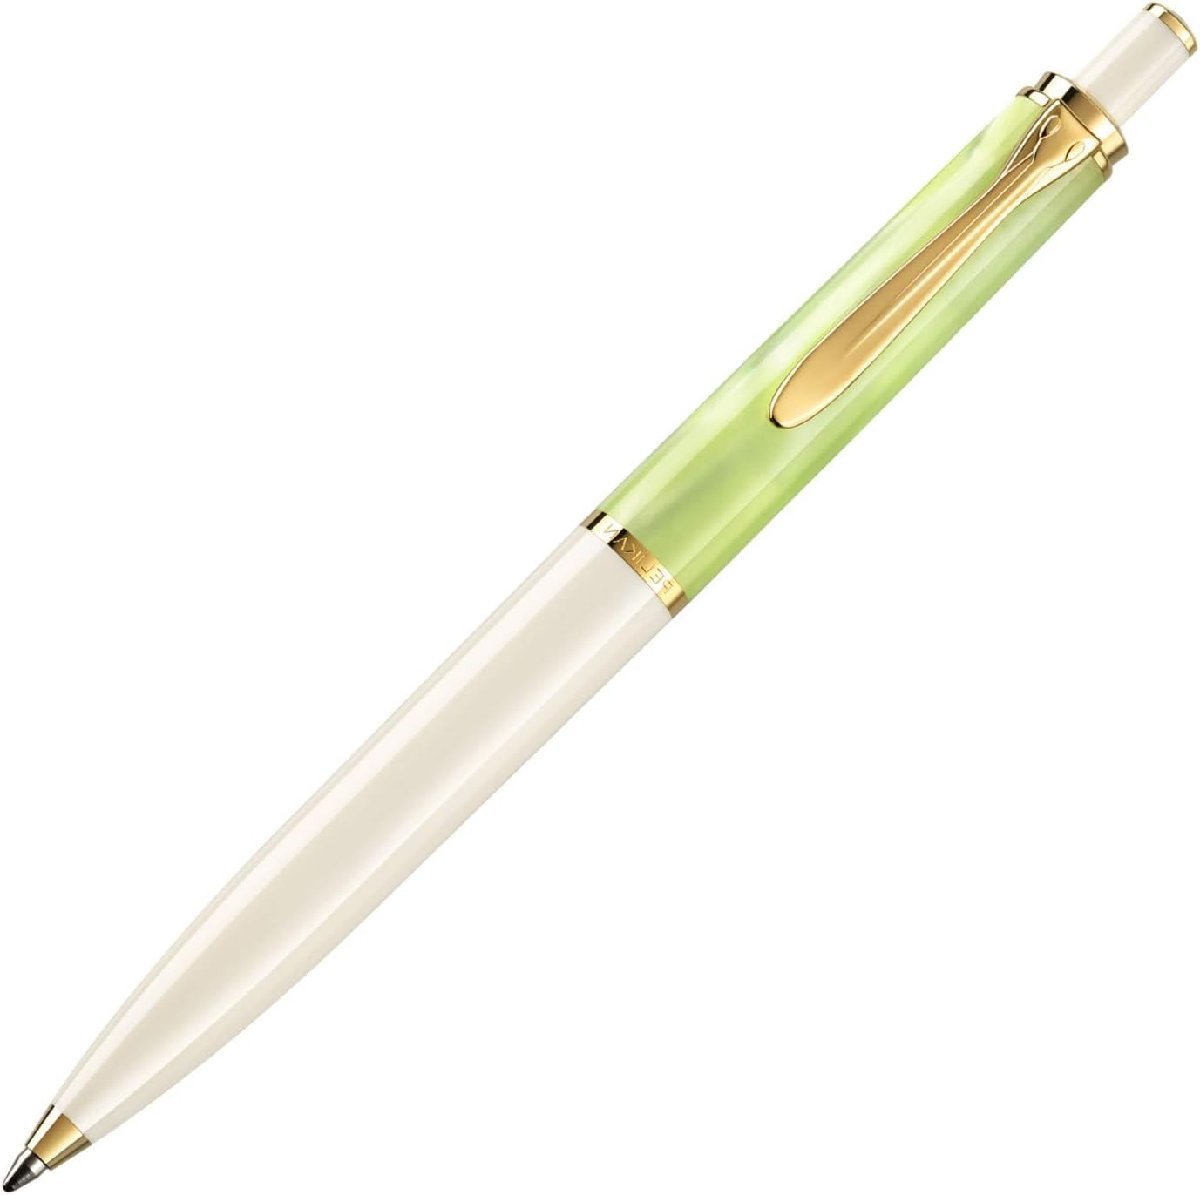  шариковая ручка пеликан K200 Classic пастель зеленый специальный производство товар Япония стандартный товар / бесплатная доставка 